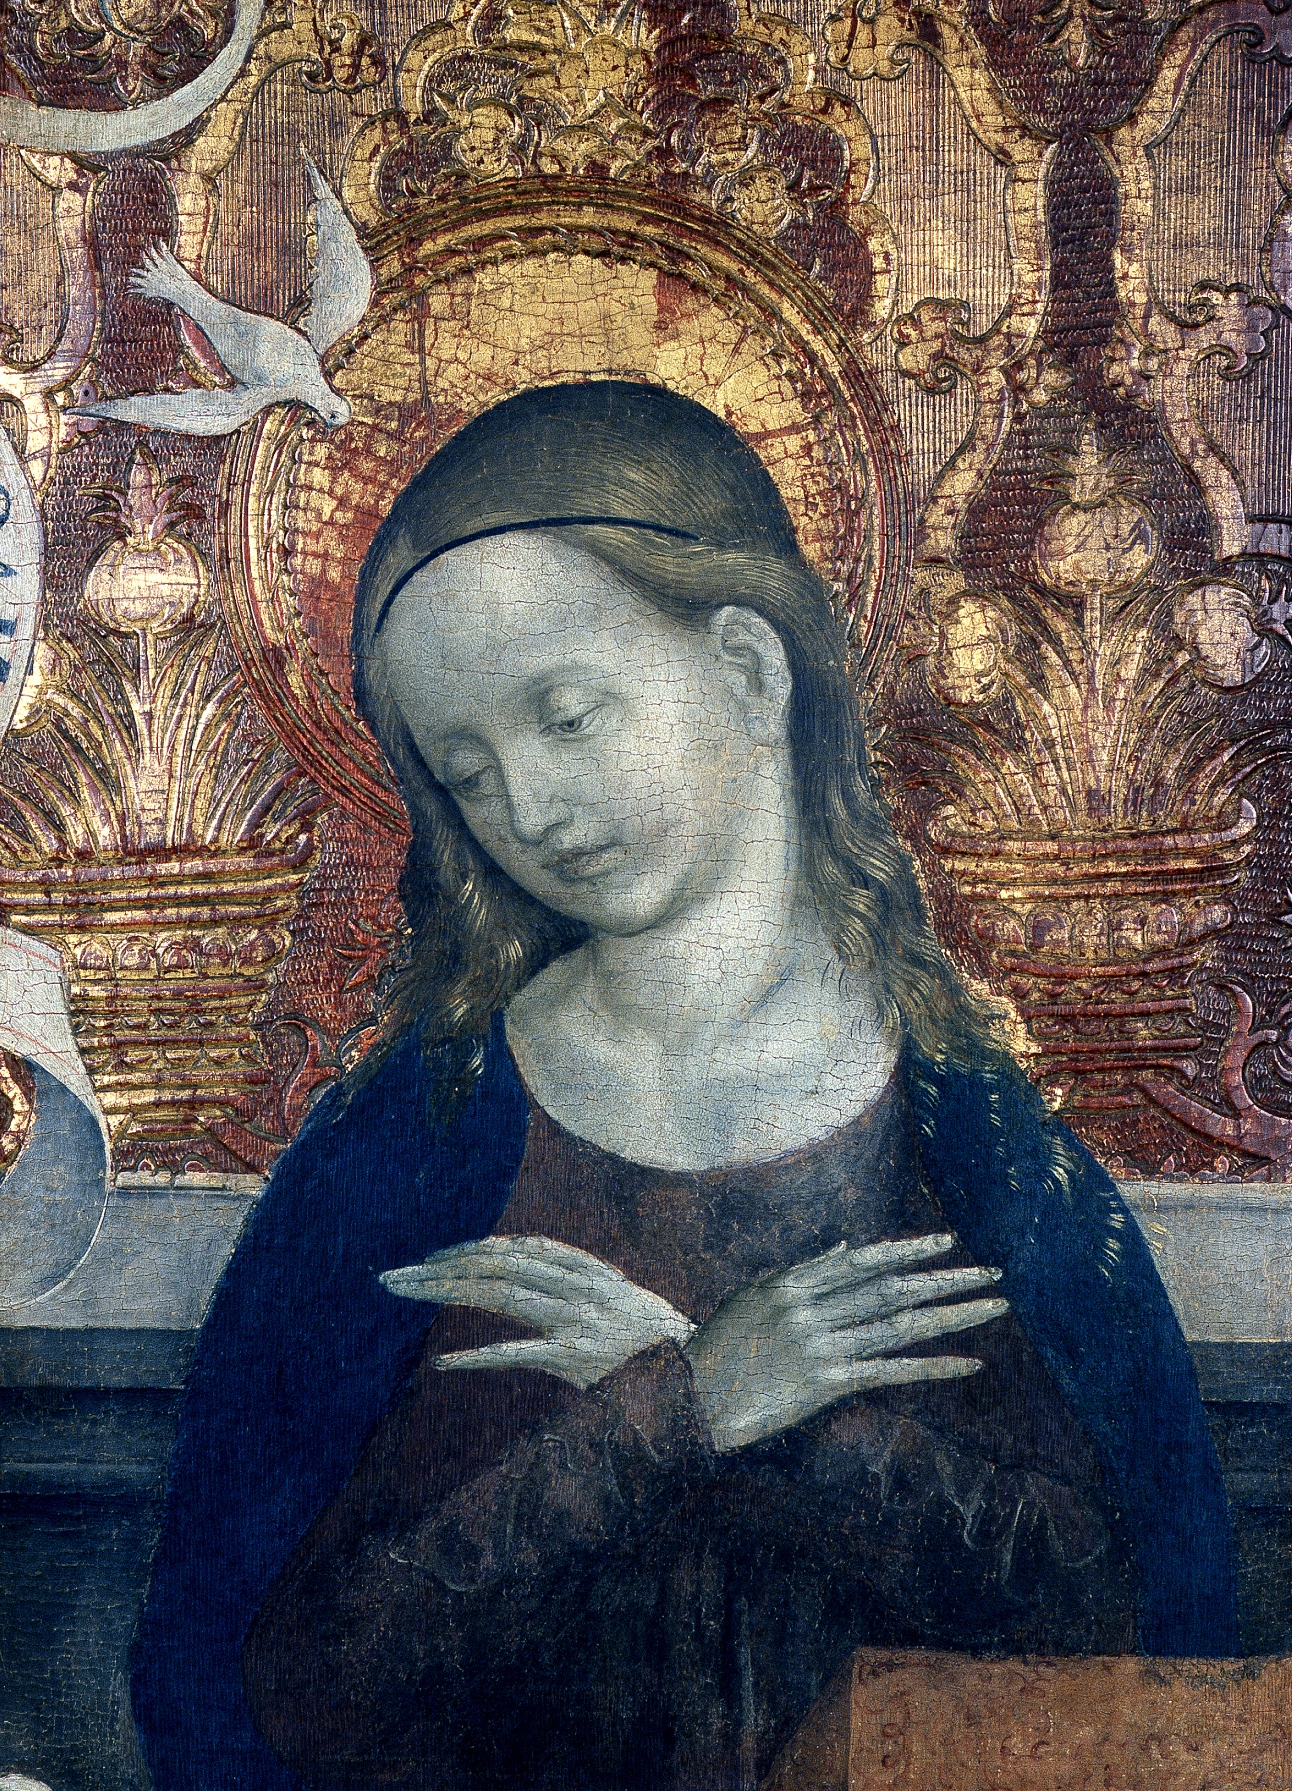 Majster z Okoličného: Mária zo skupiny Zvestovania. Okolo 1510. Liptovský Mikuláš – Okoličné, kláštorný Kostol sv. Petra z Alkantary.